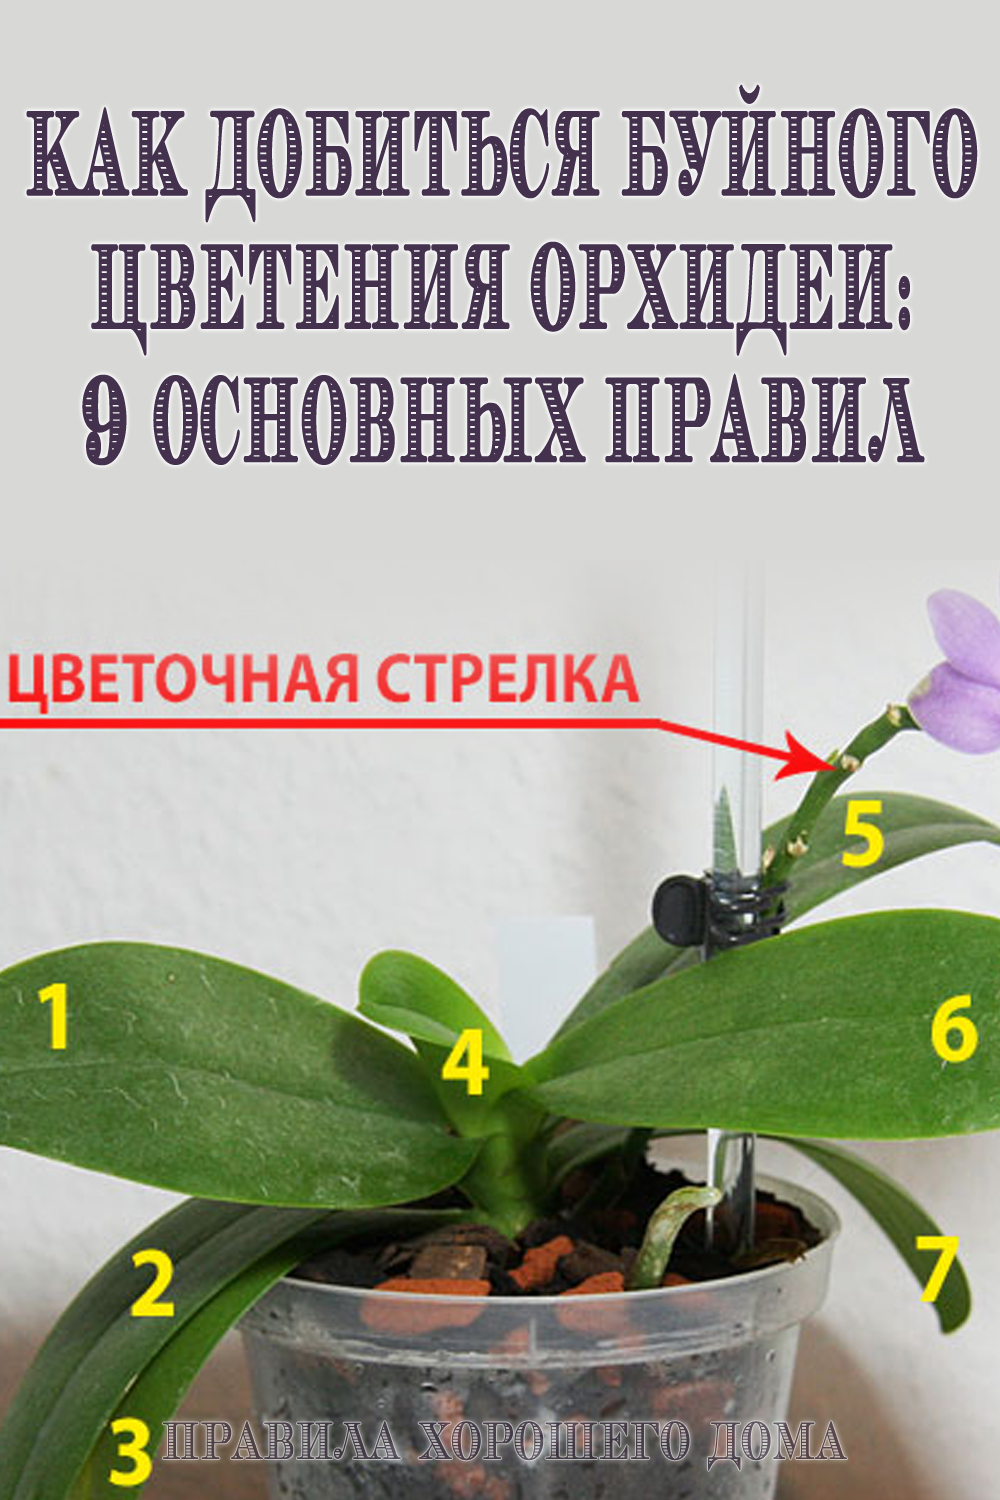 Значение цветов орхидеи: что означает этот цветок, стоящий в доме и в подарок женщине, какой цвет что обозначает на языке цветов, история его происхождения